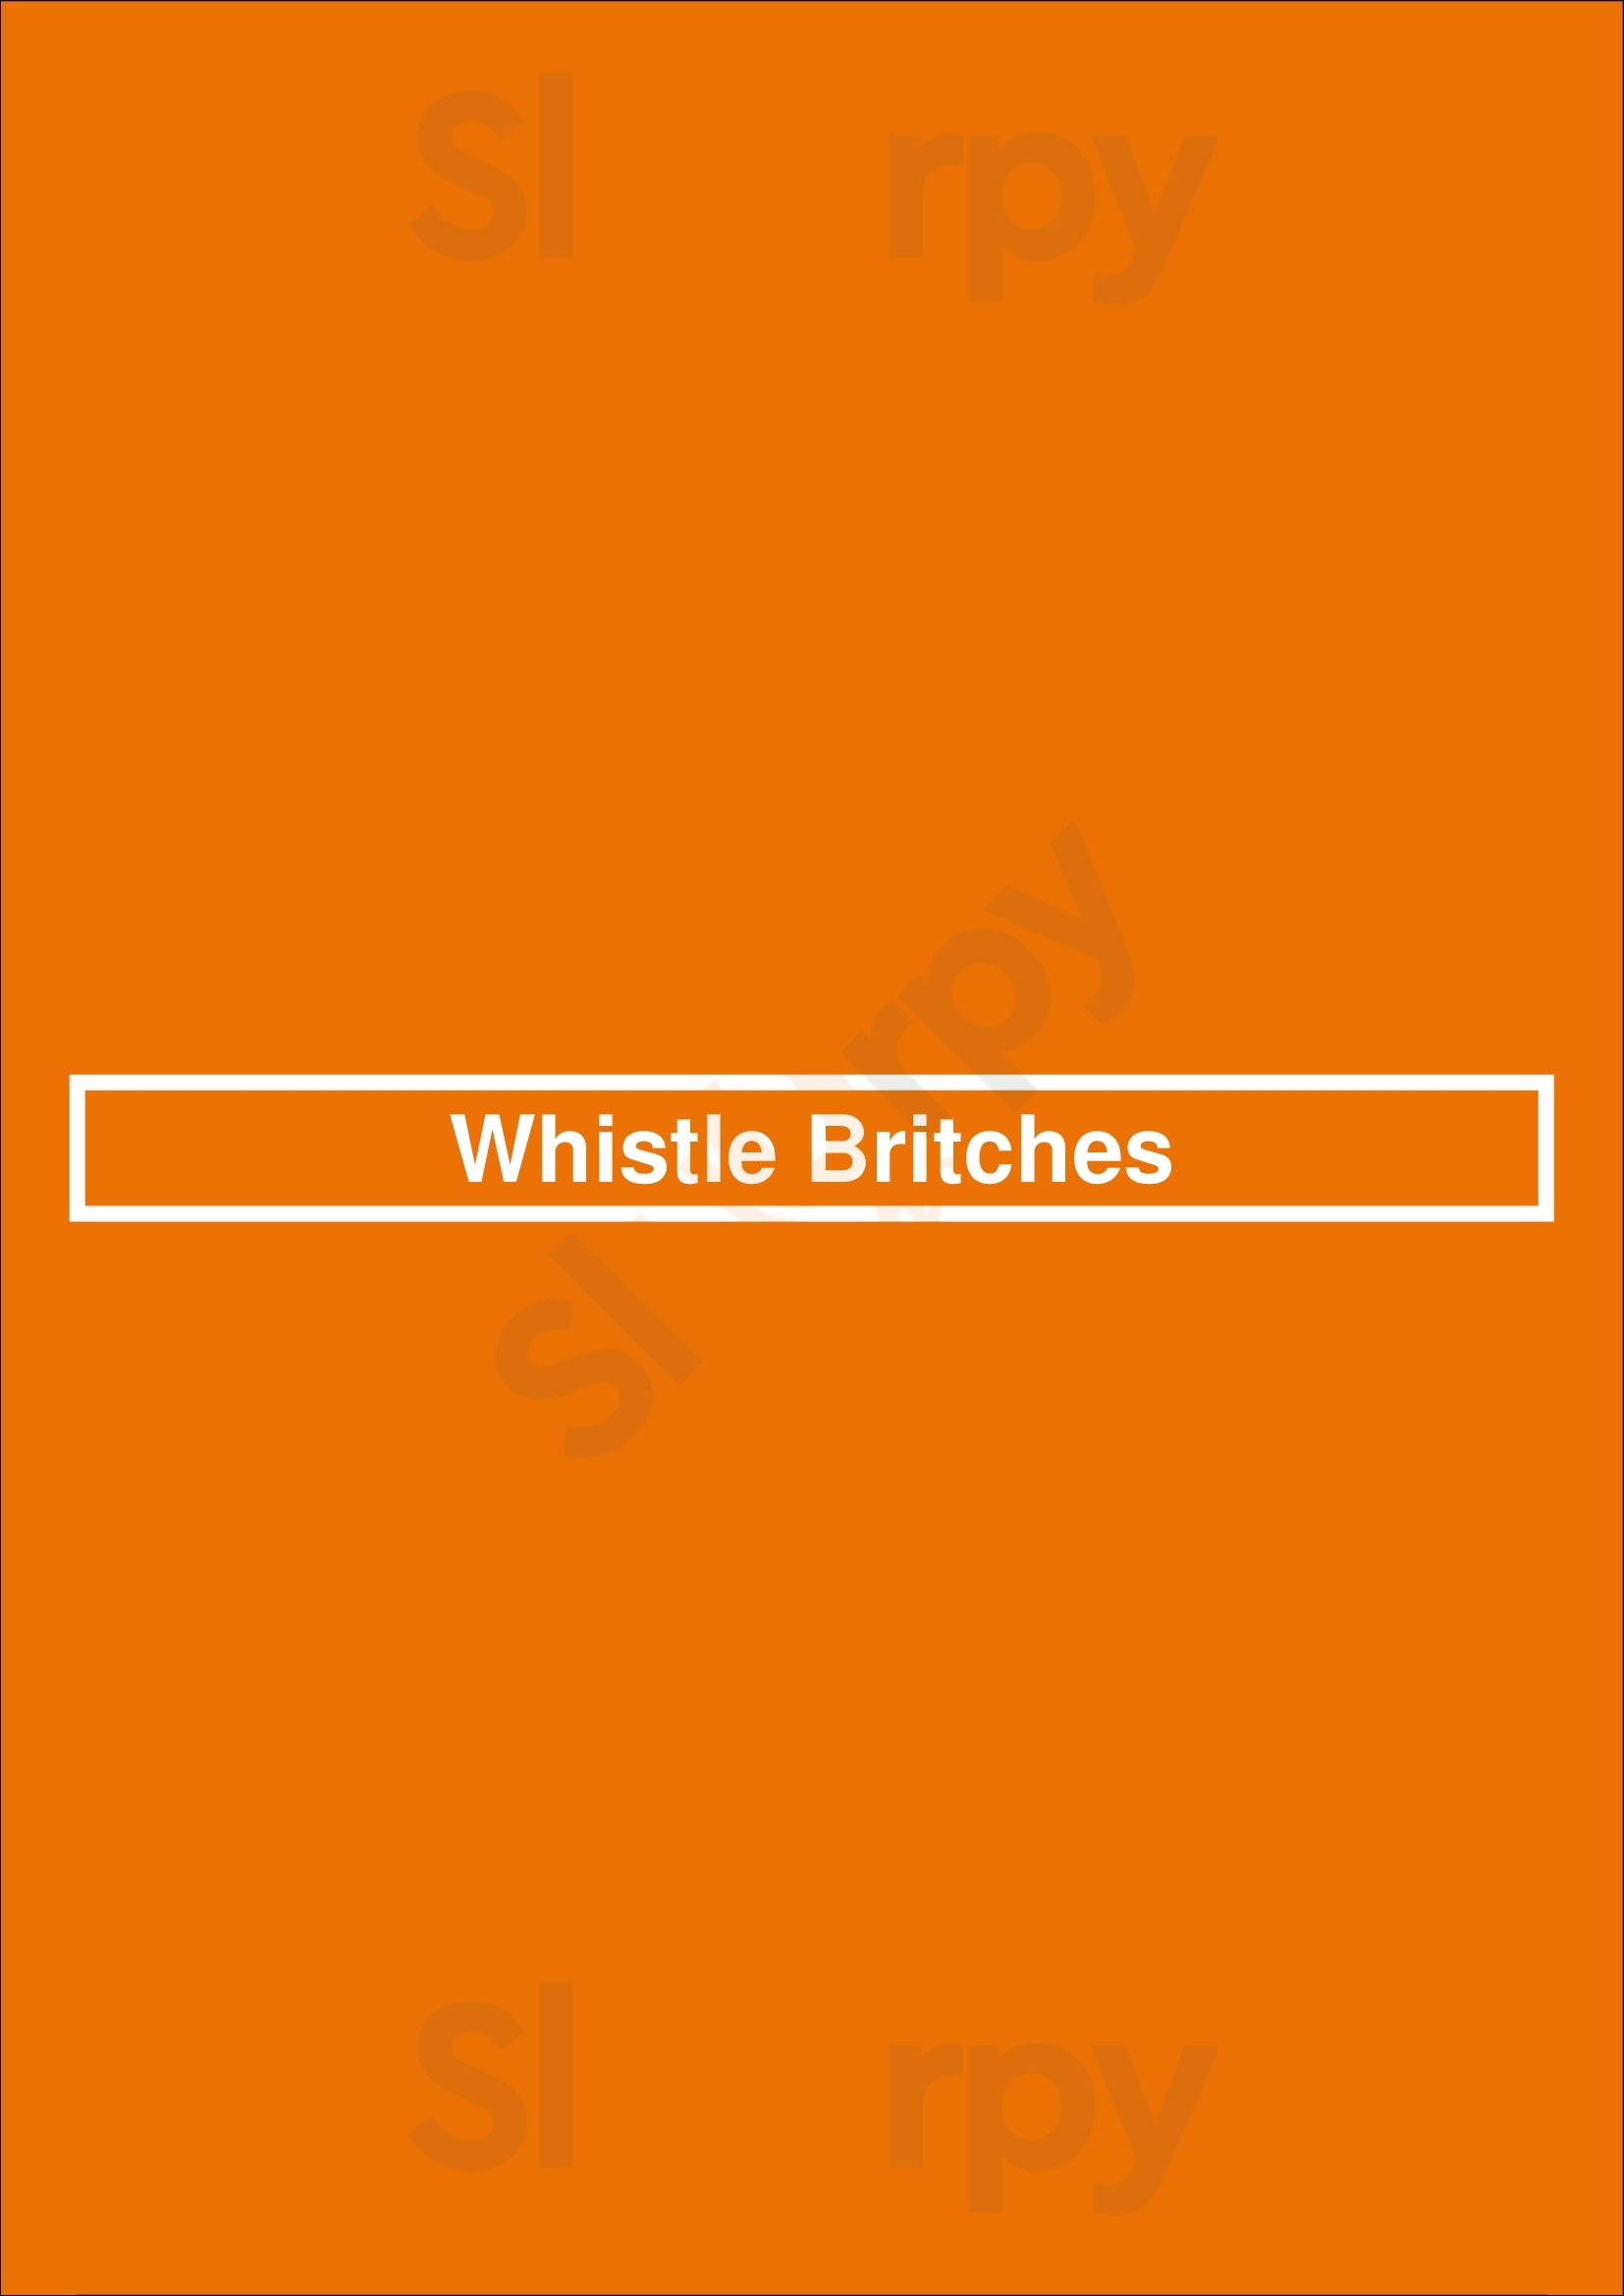 Whistle Britches Plano Menu - 1